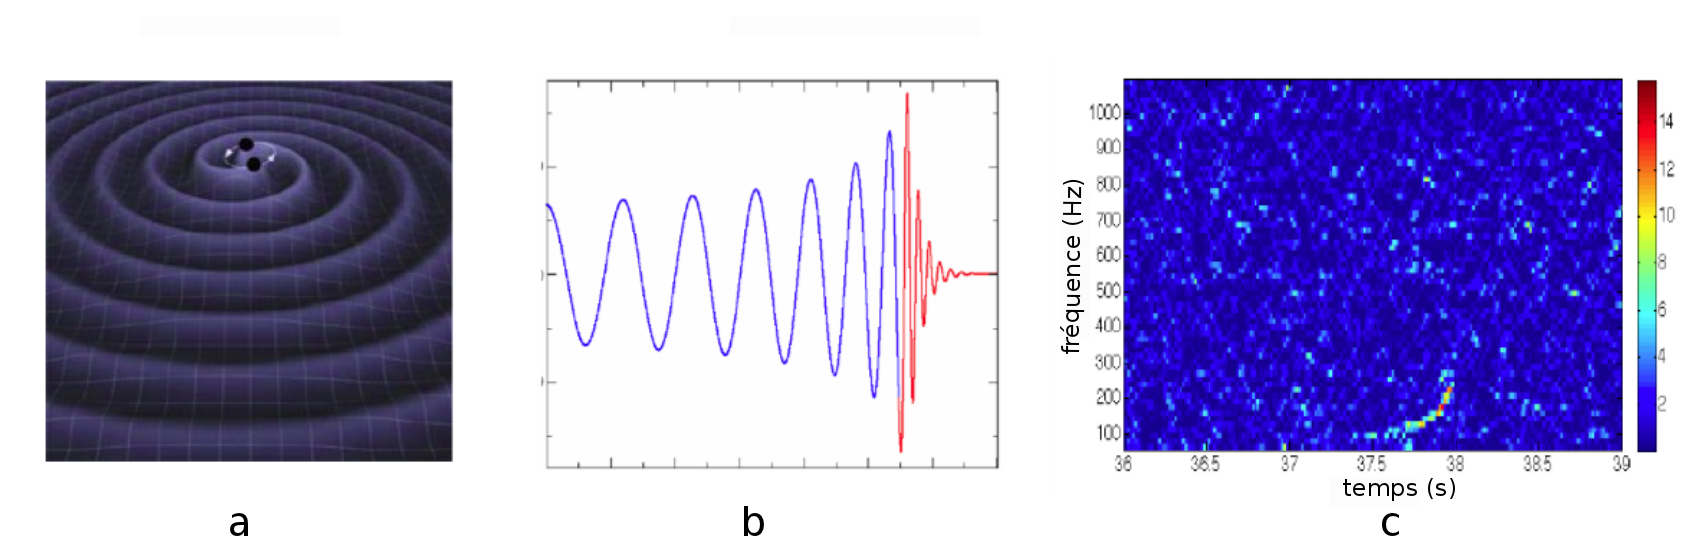 a - système coalescent d'étoiles binaires, b - chirp : sinus à fréquence locale variable, c - carte temps-fréquence (la couleur code les valeurs, le bleu pour les faibles valeurs d'énergie à ce temps et à cette fréquence)